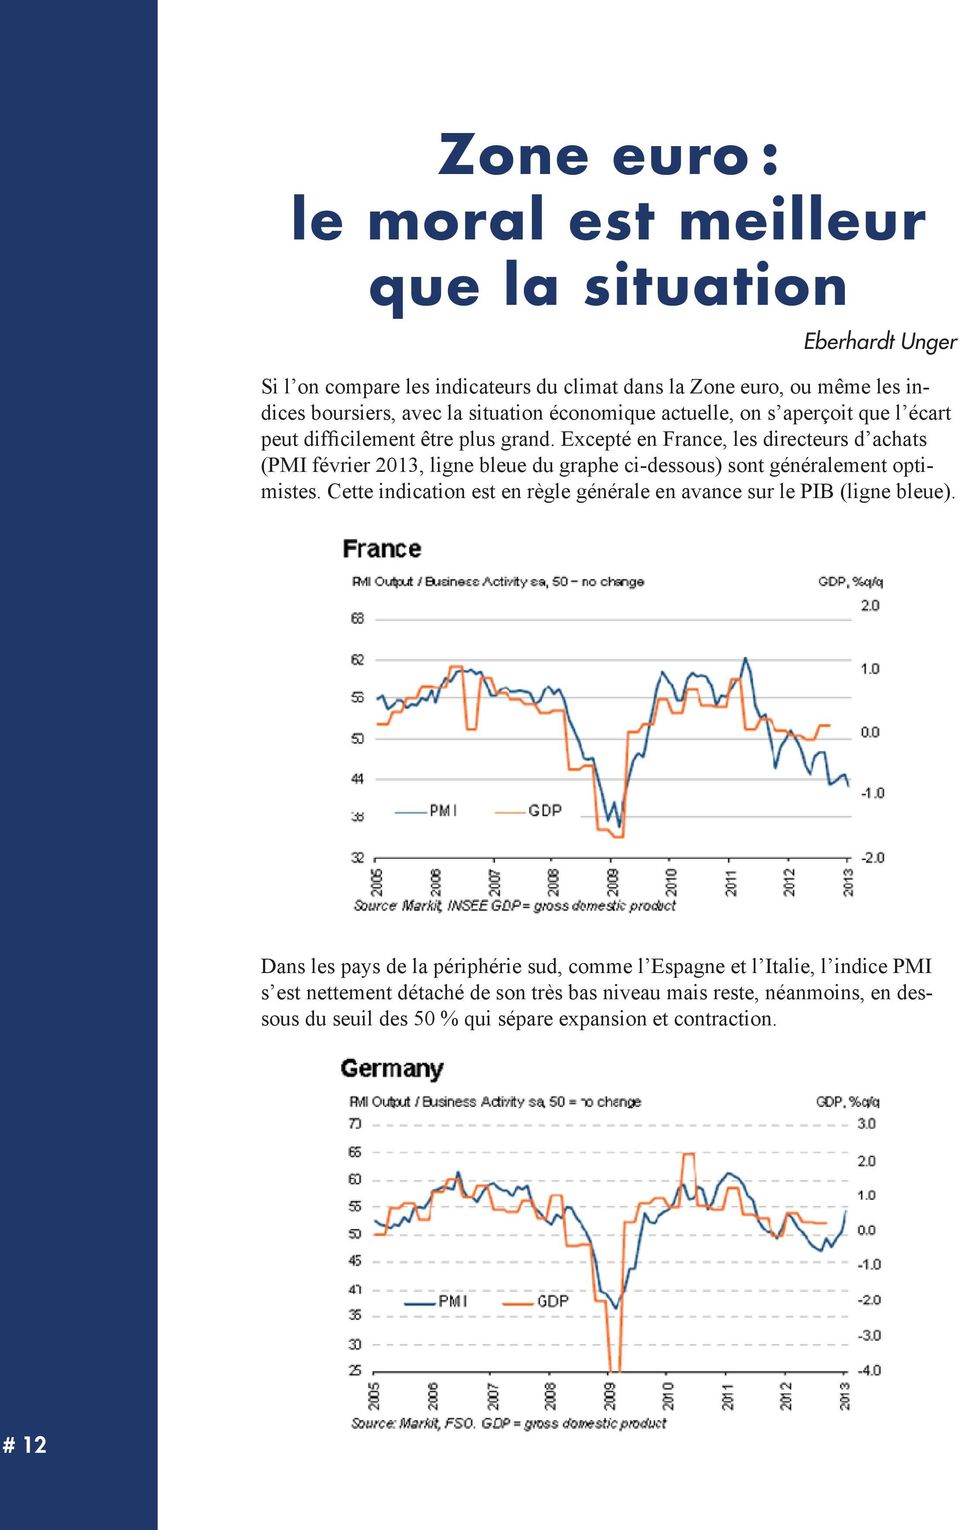 Excepté en France, les directeurs d achats (PMI février 2013, ligne bleue du graphe ci-dessous) sont généralement optimistes.